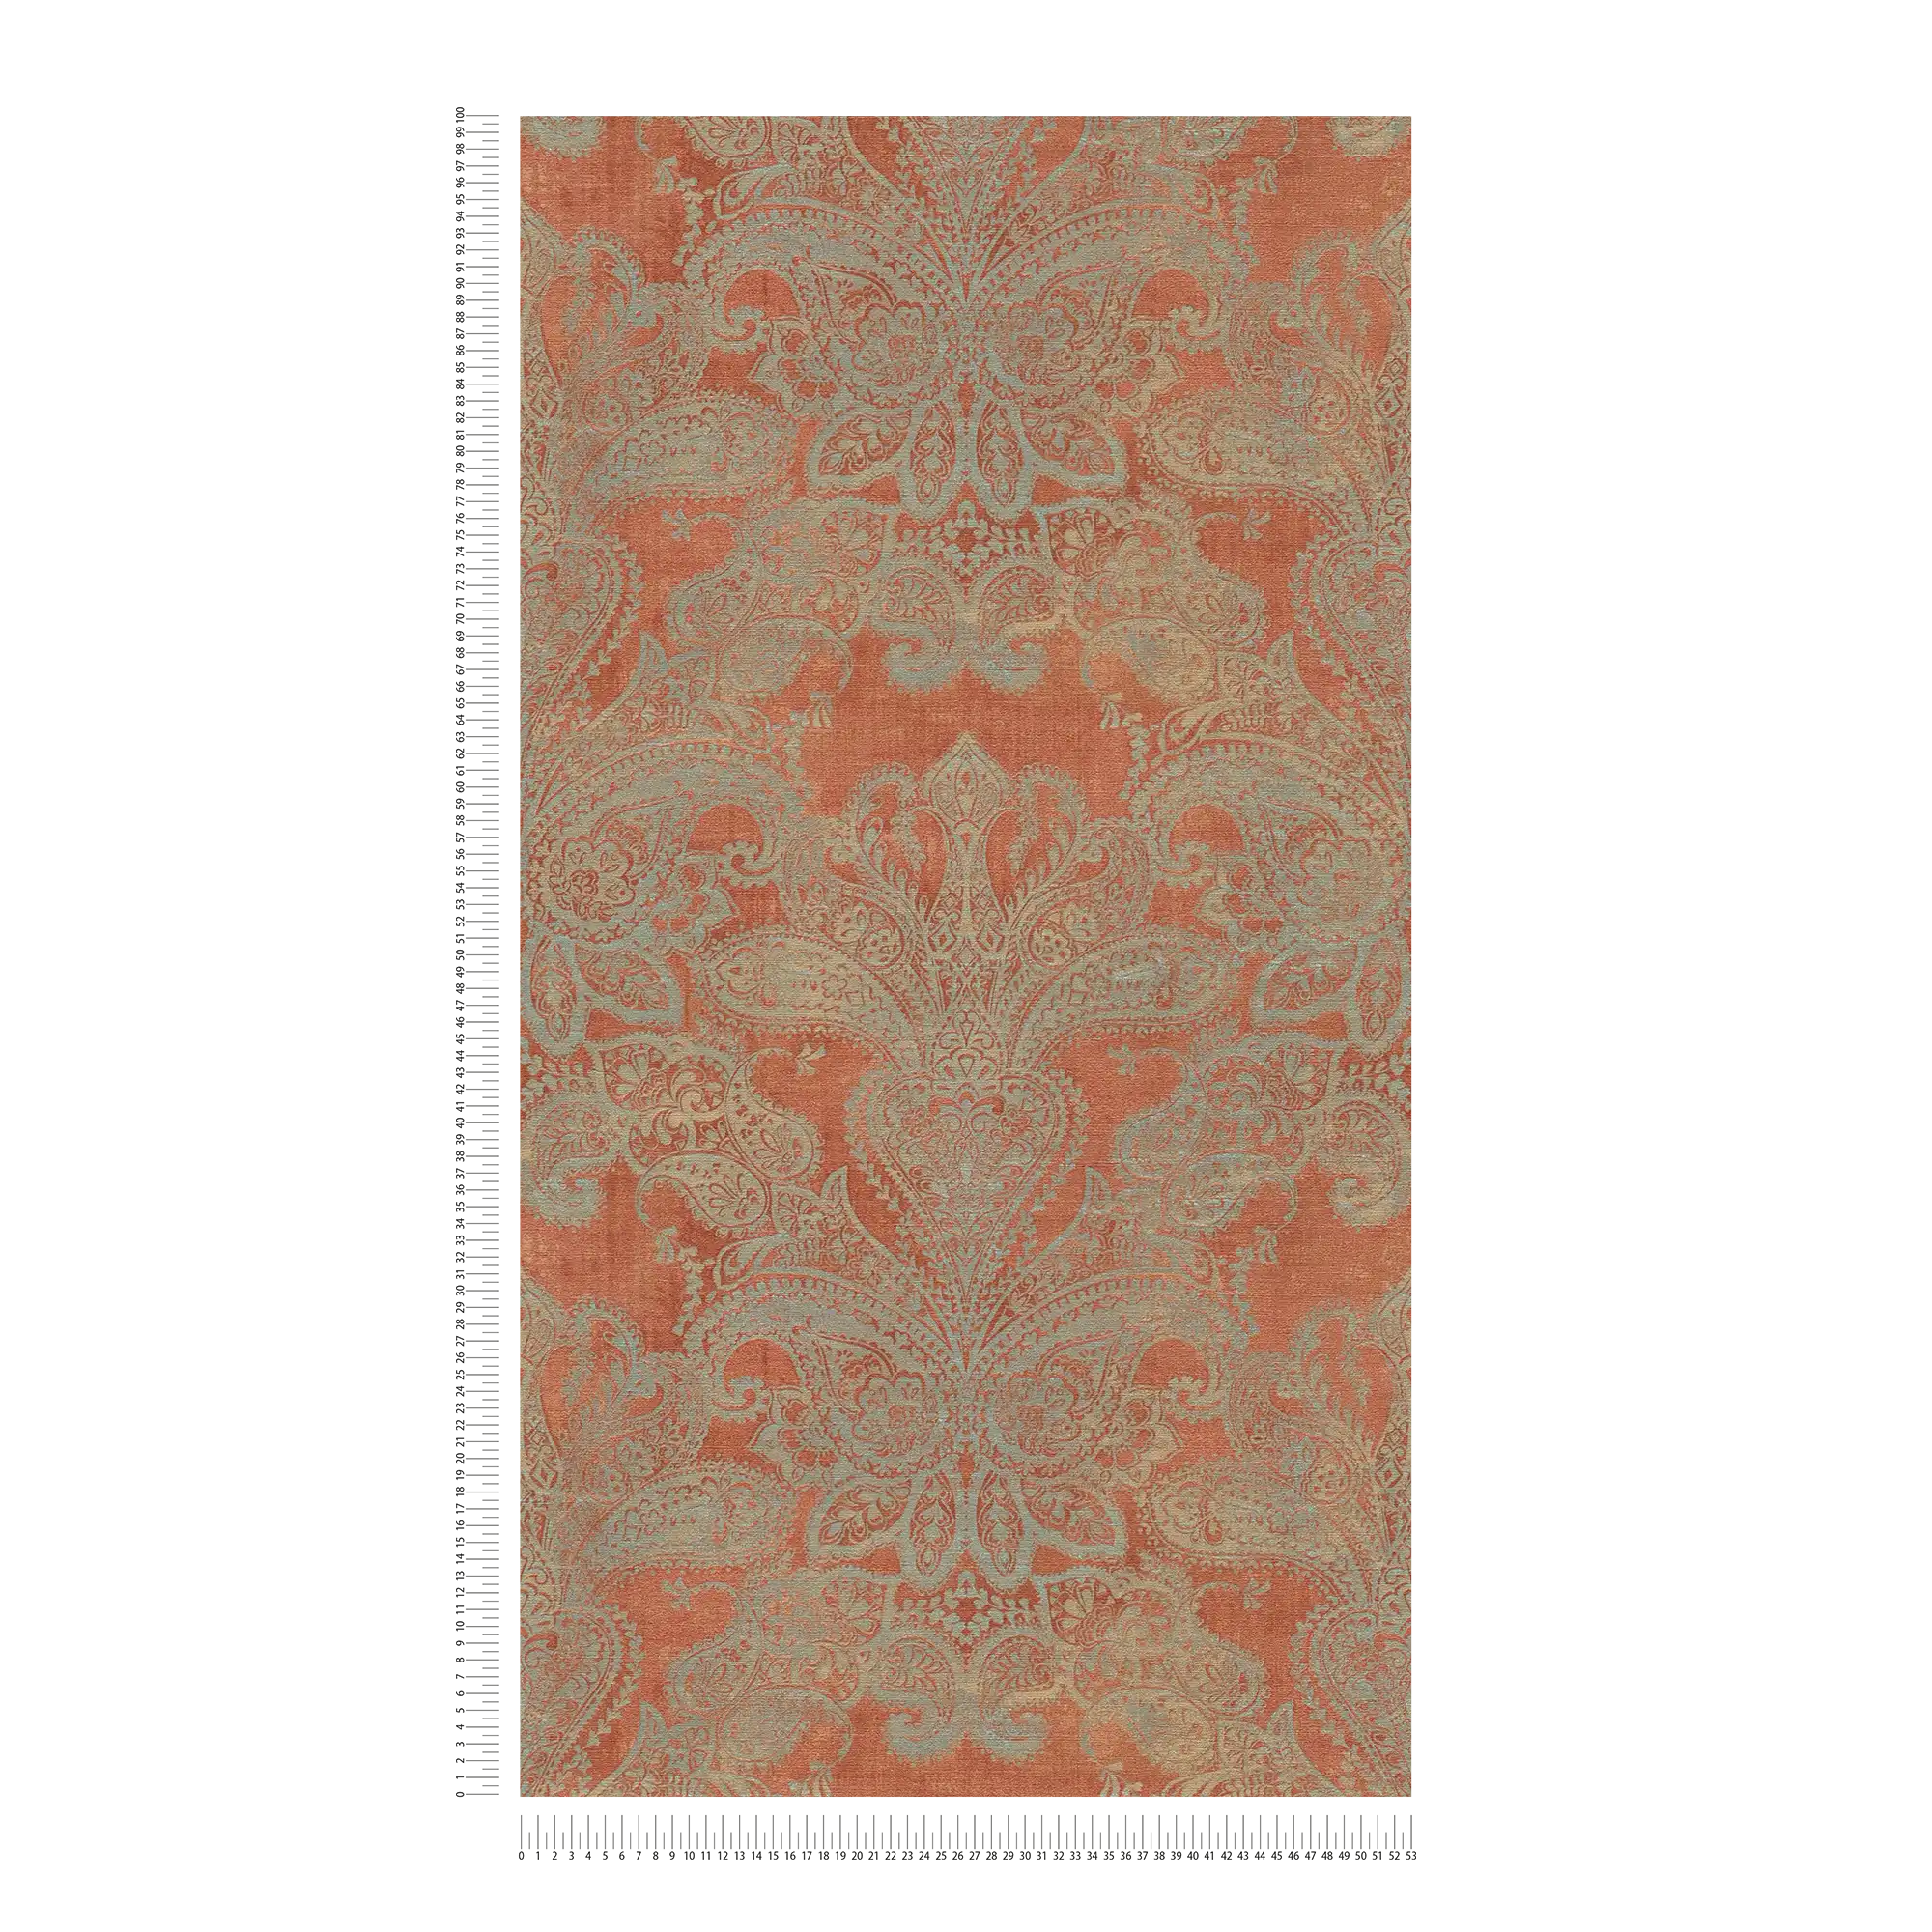             Papier peint intissé de style baroque avec ornements - orange, turquoise, gris
        